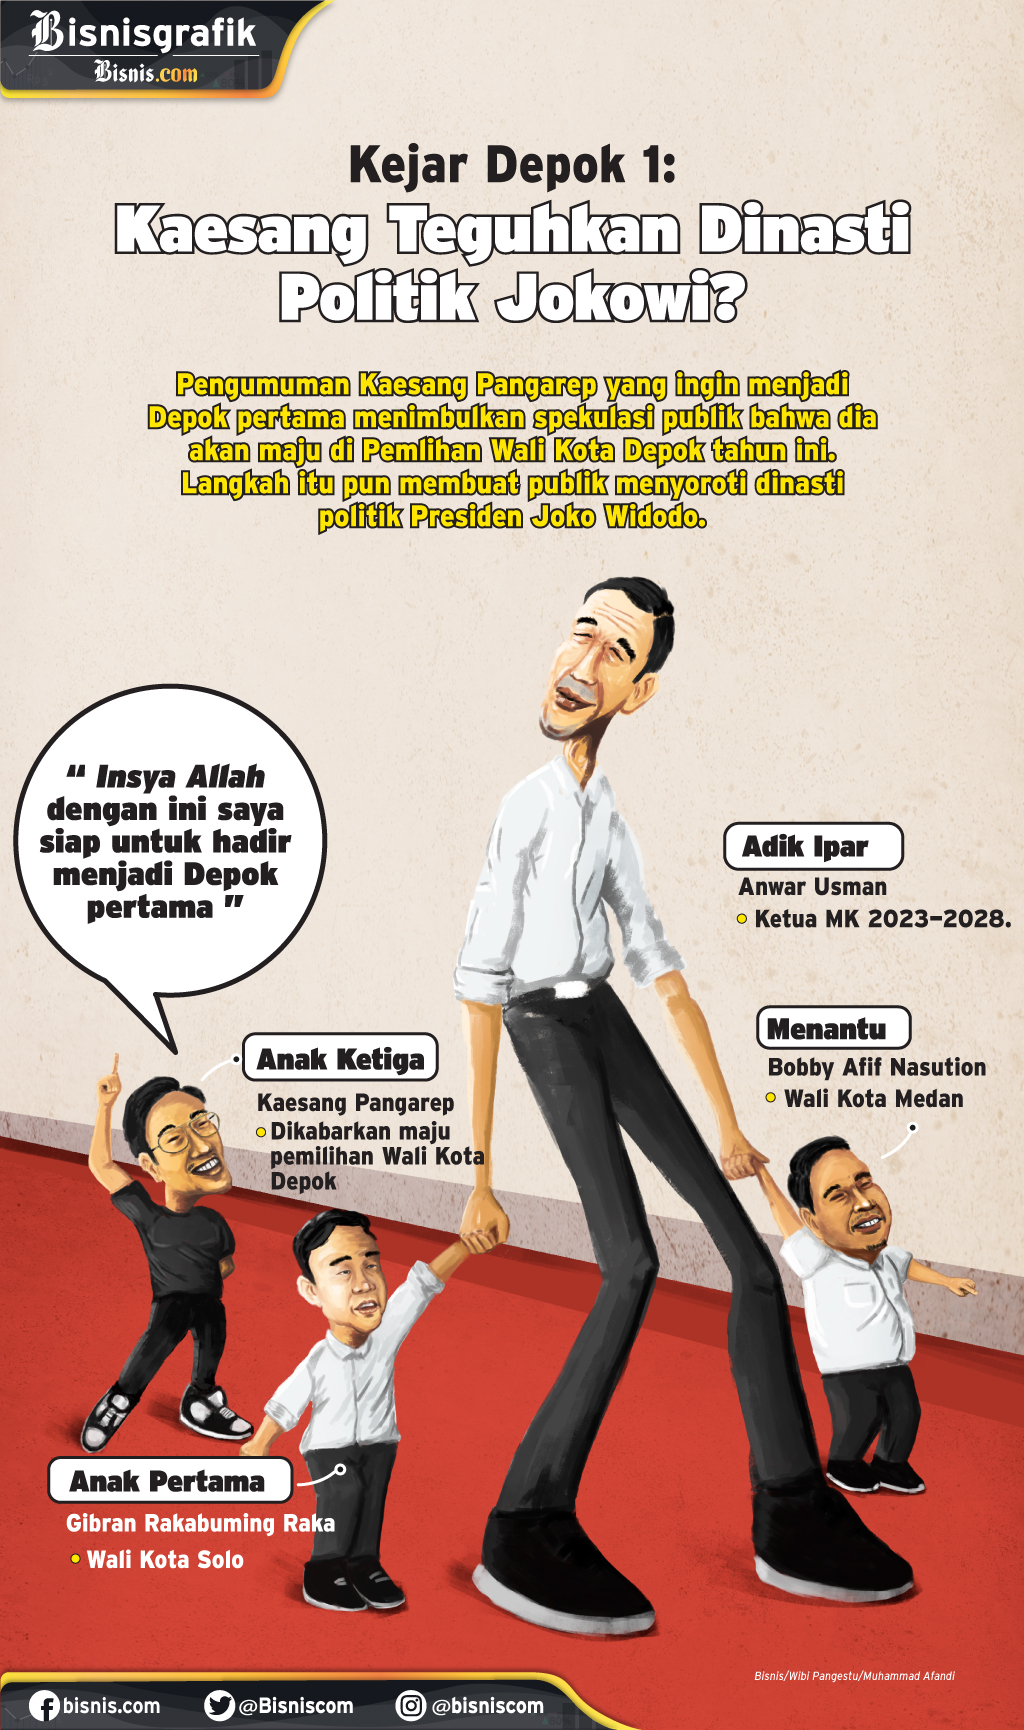  Kejar Depok 1: Kaesang Teguhkan Dinasti Politik Jokowi?